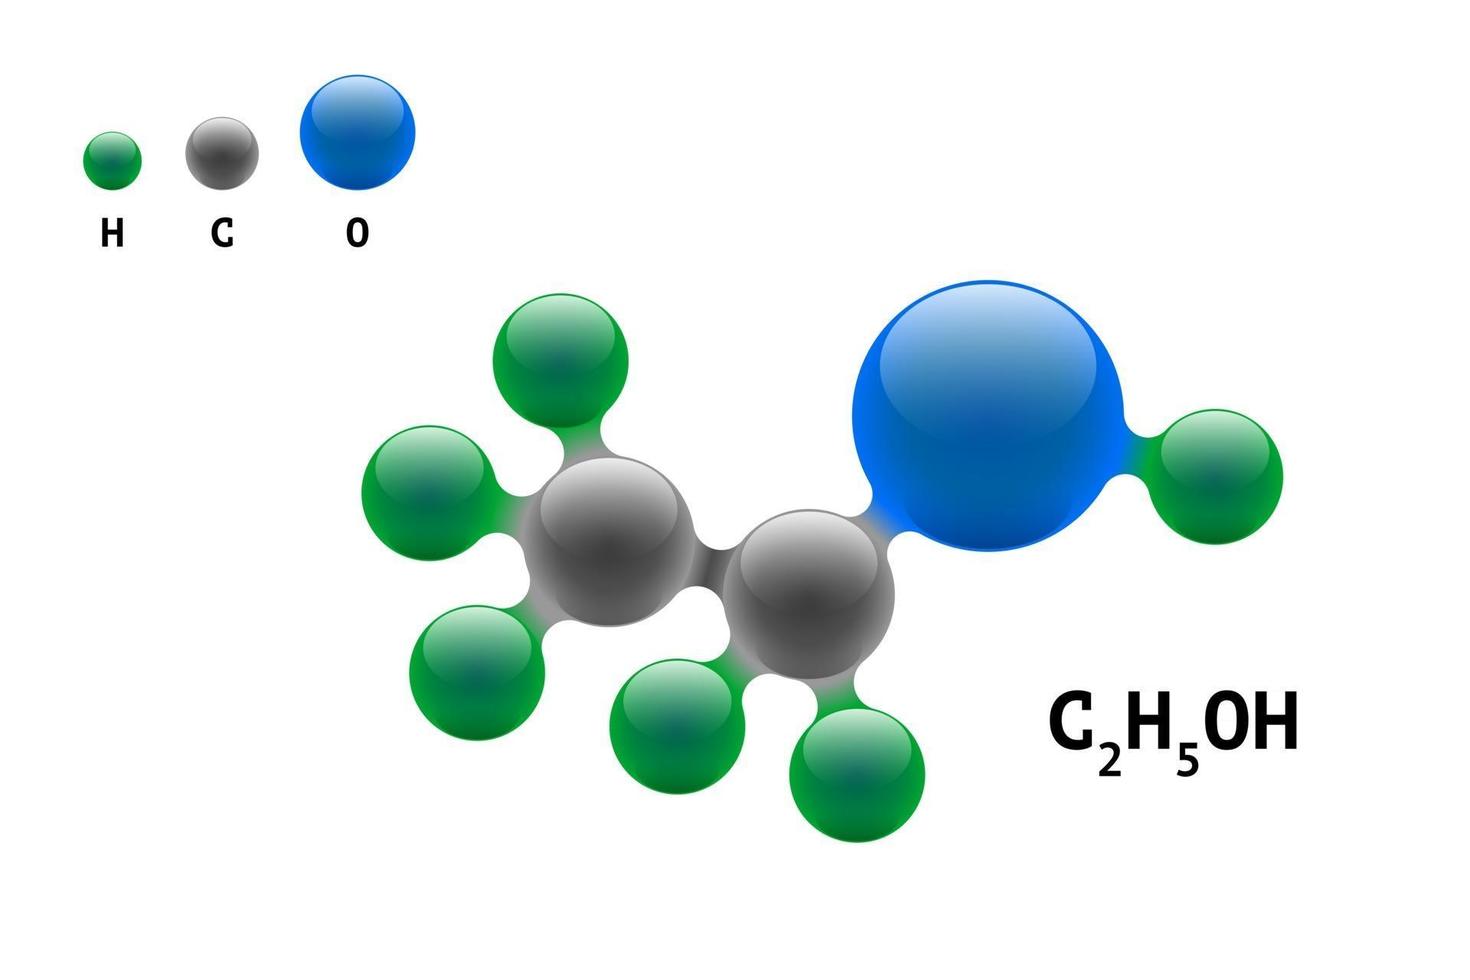 kemimodellmolekyl etanol c2h5oh vetenskapliga elementformel. integrerade partiklar naturlig oorganisk 3d-alkoholmolekylär strukturförening. kol syre och väteatom vektor eps sfärer